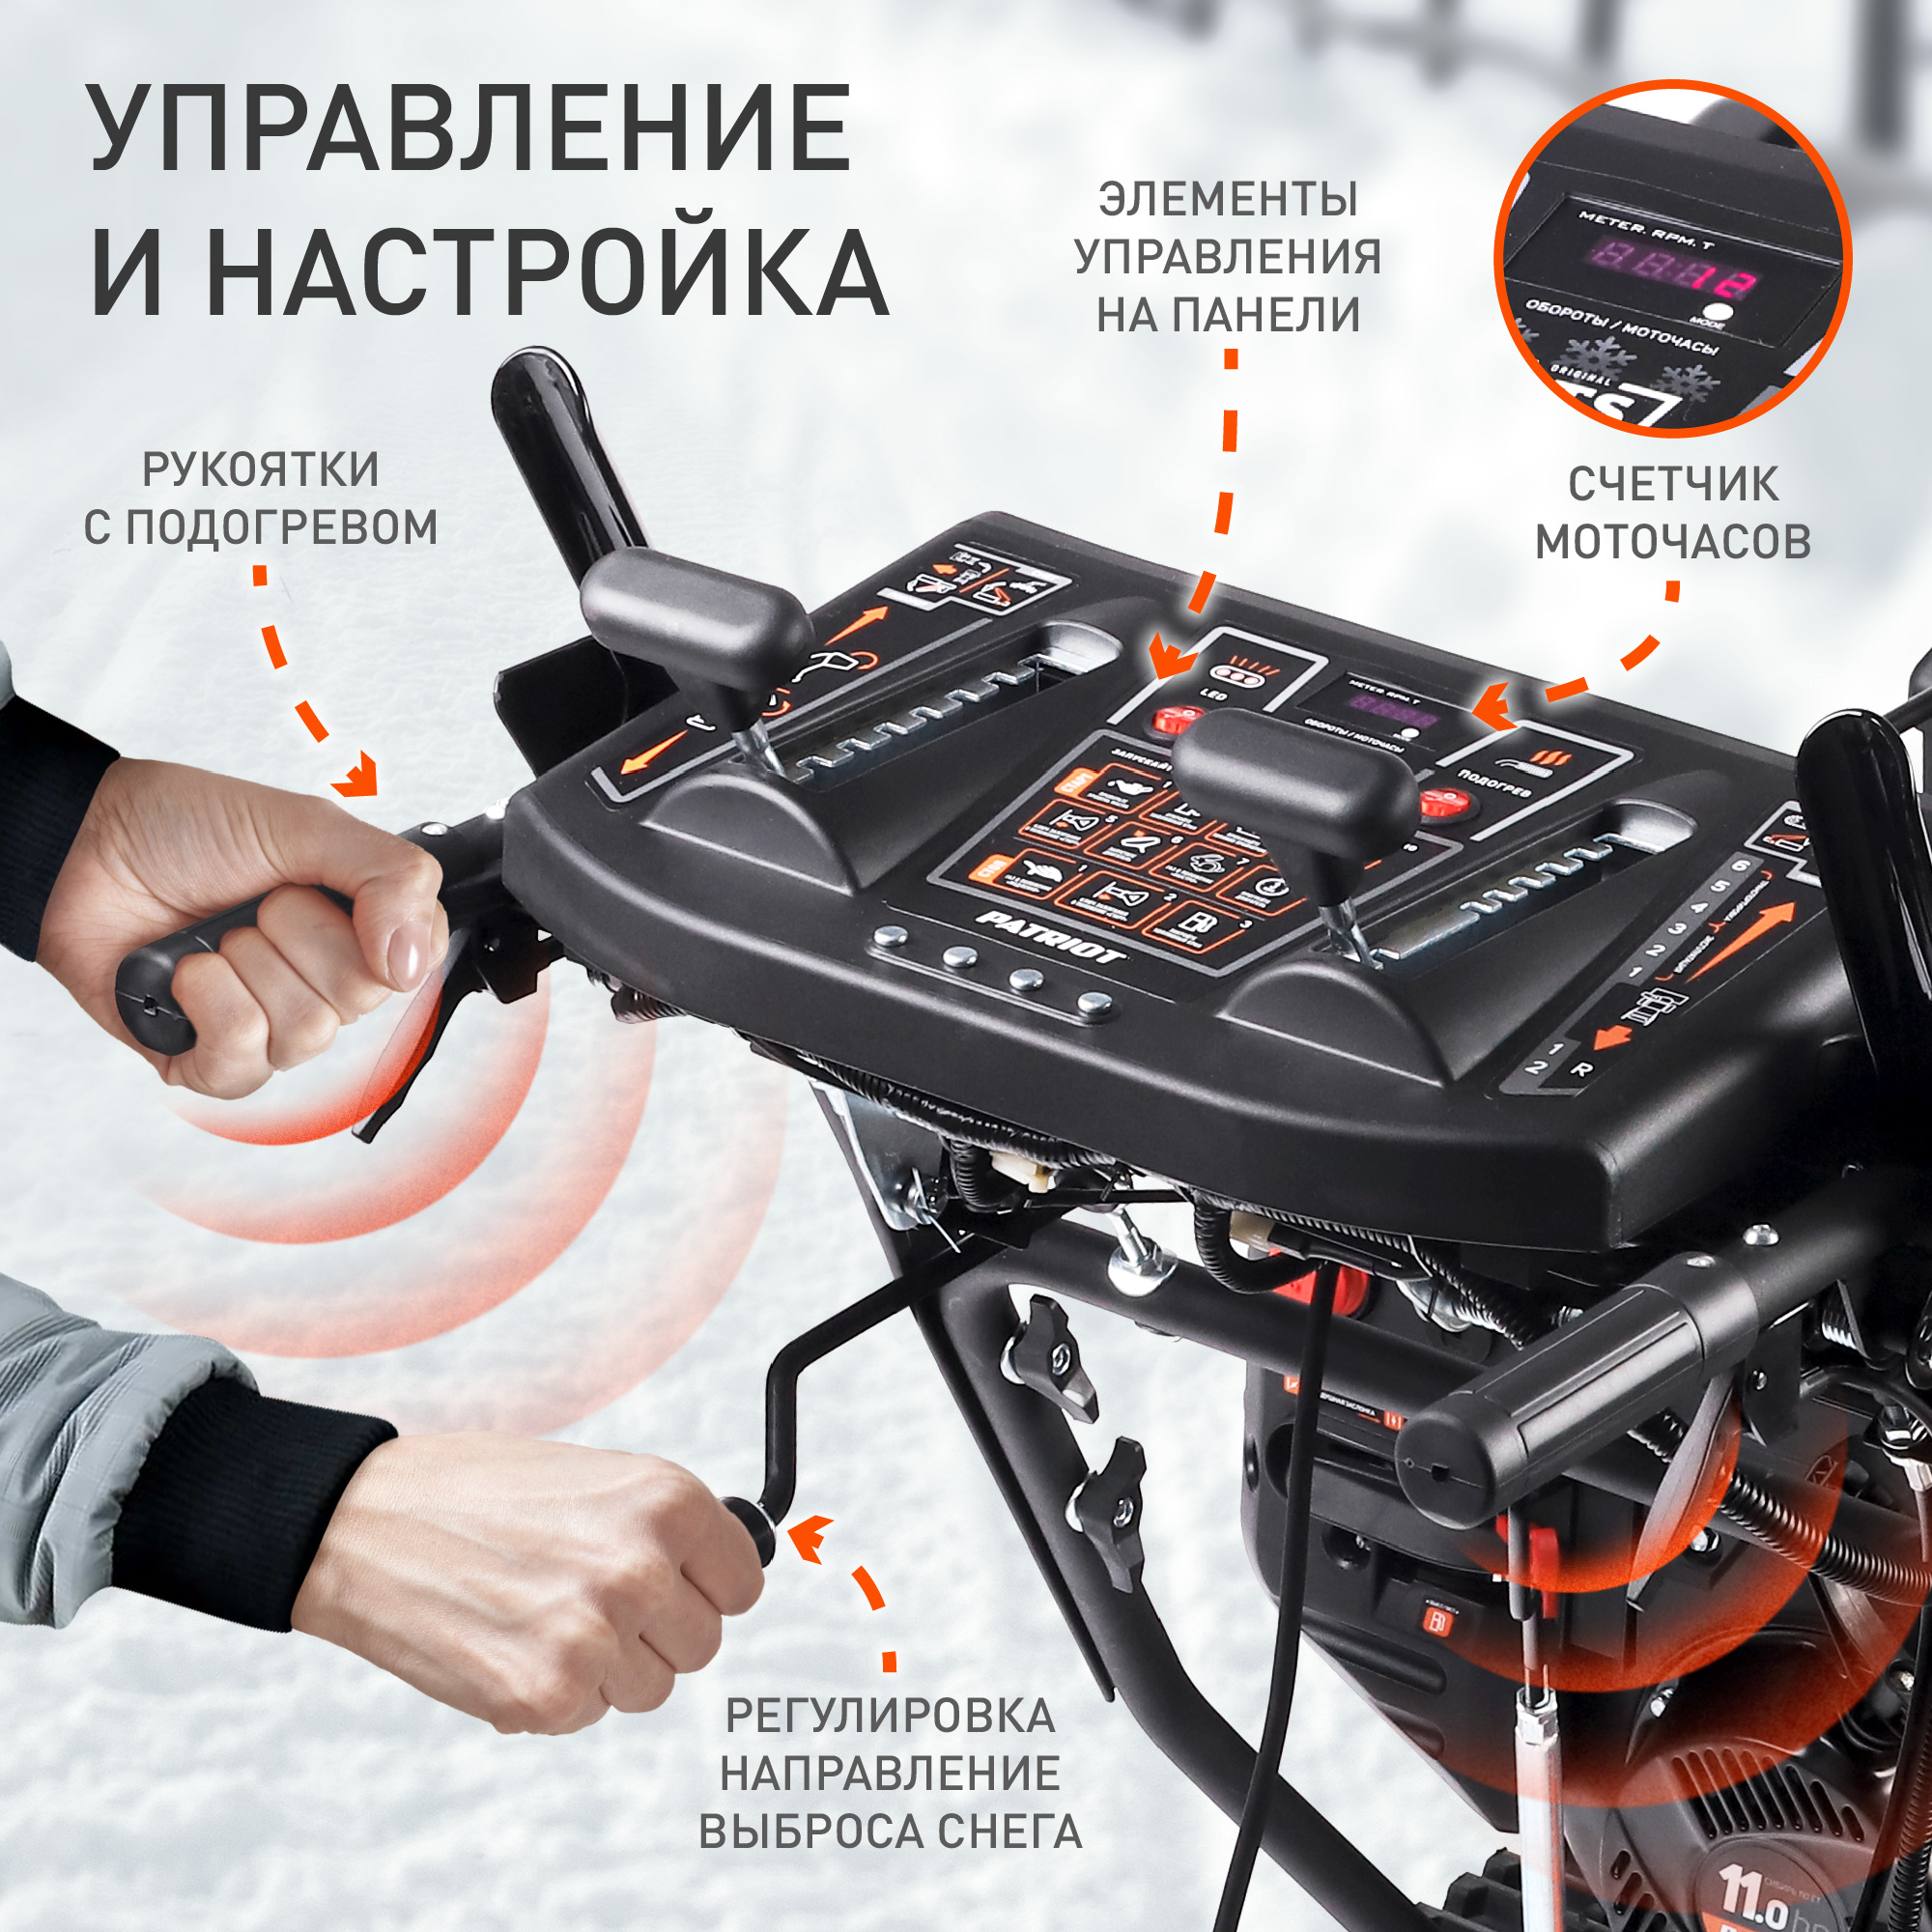 Снегоуборщик бензиновый PATRIOT Сибирь 110 ЕT